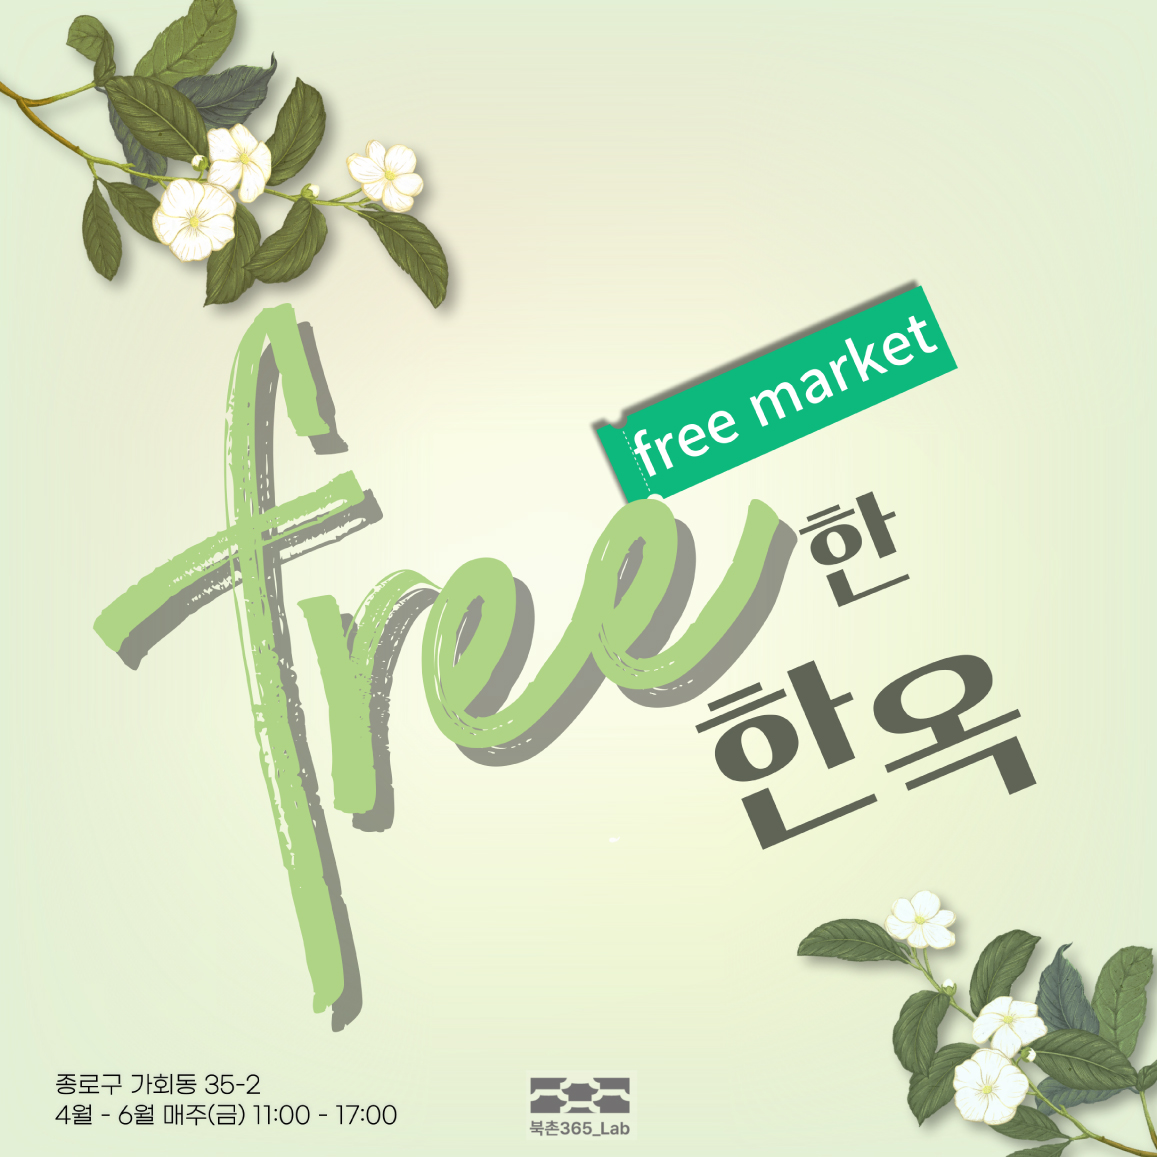 
free market

free한 한옥

종로구 가회동 35-2
4월 - 6월 매주(금) 11:00 - 17:00
